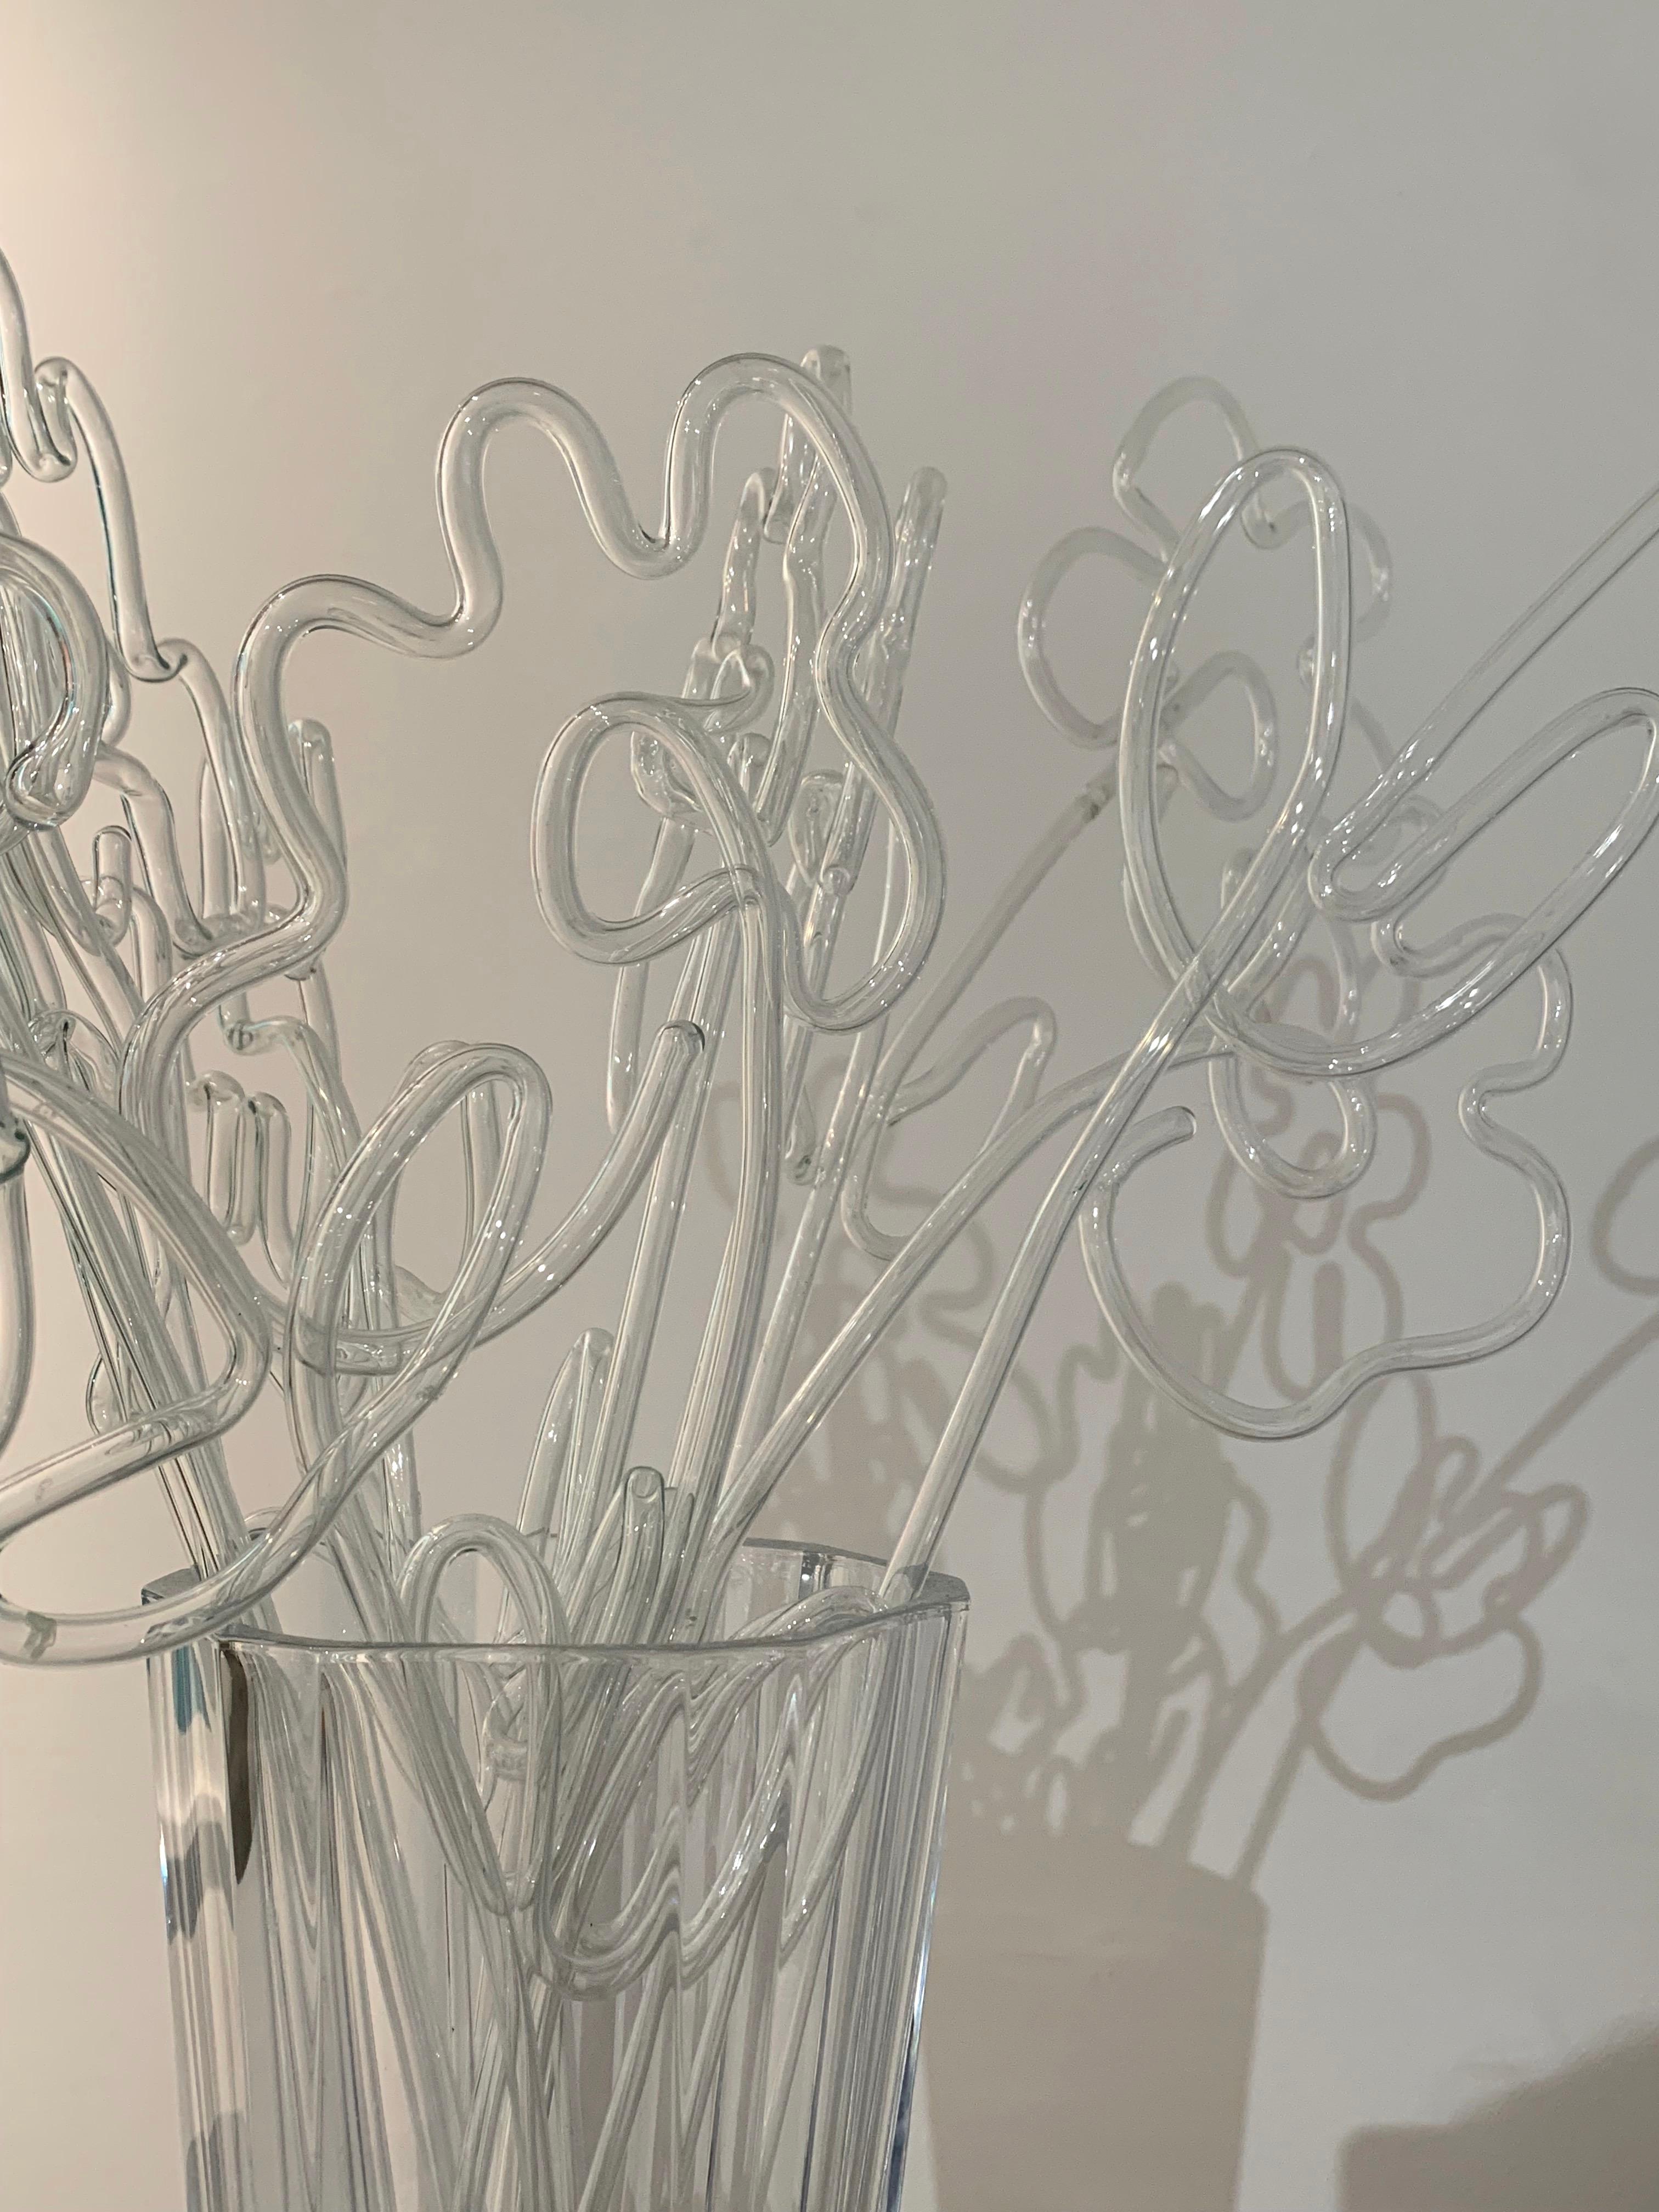 Mit dem unverwechselbaren Medium Nagellack auf Glas verwandelt Özmenoğlu alltägliche Gegenstände in wunderschöne Kunstwerke. Ihre Glastafel-Skulpturen spielen mit der Perspektive des Betrachters, verändern sich mit jedem Blickwinkel und erscheinen